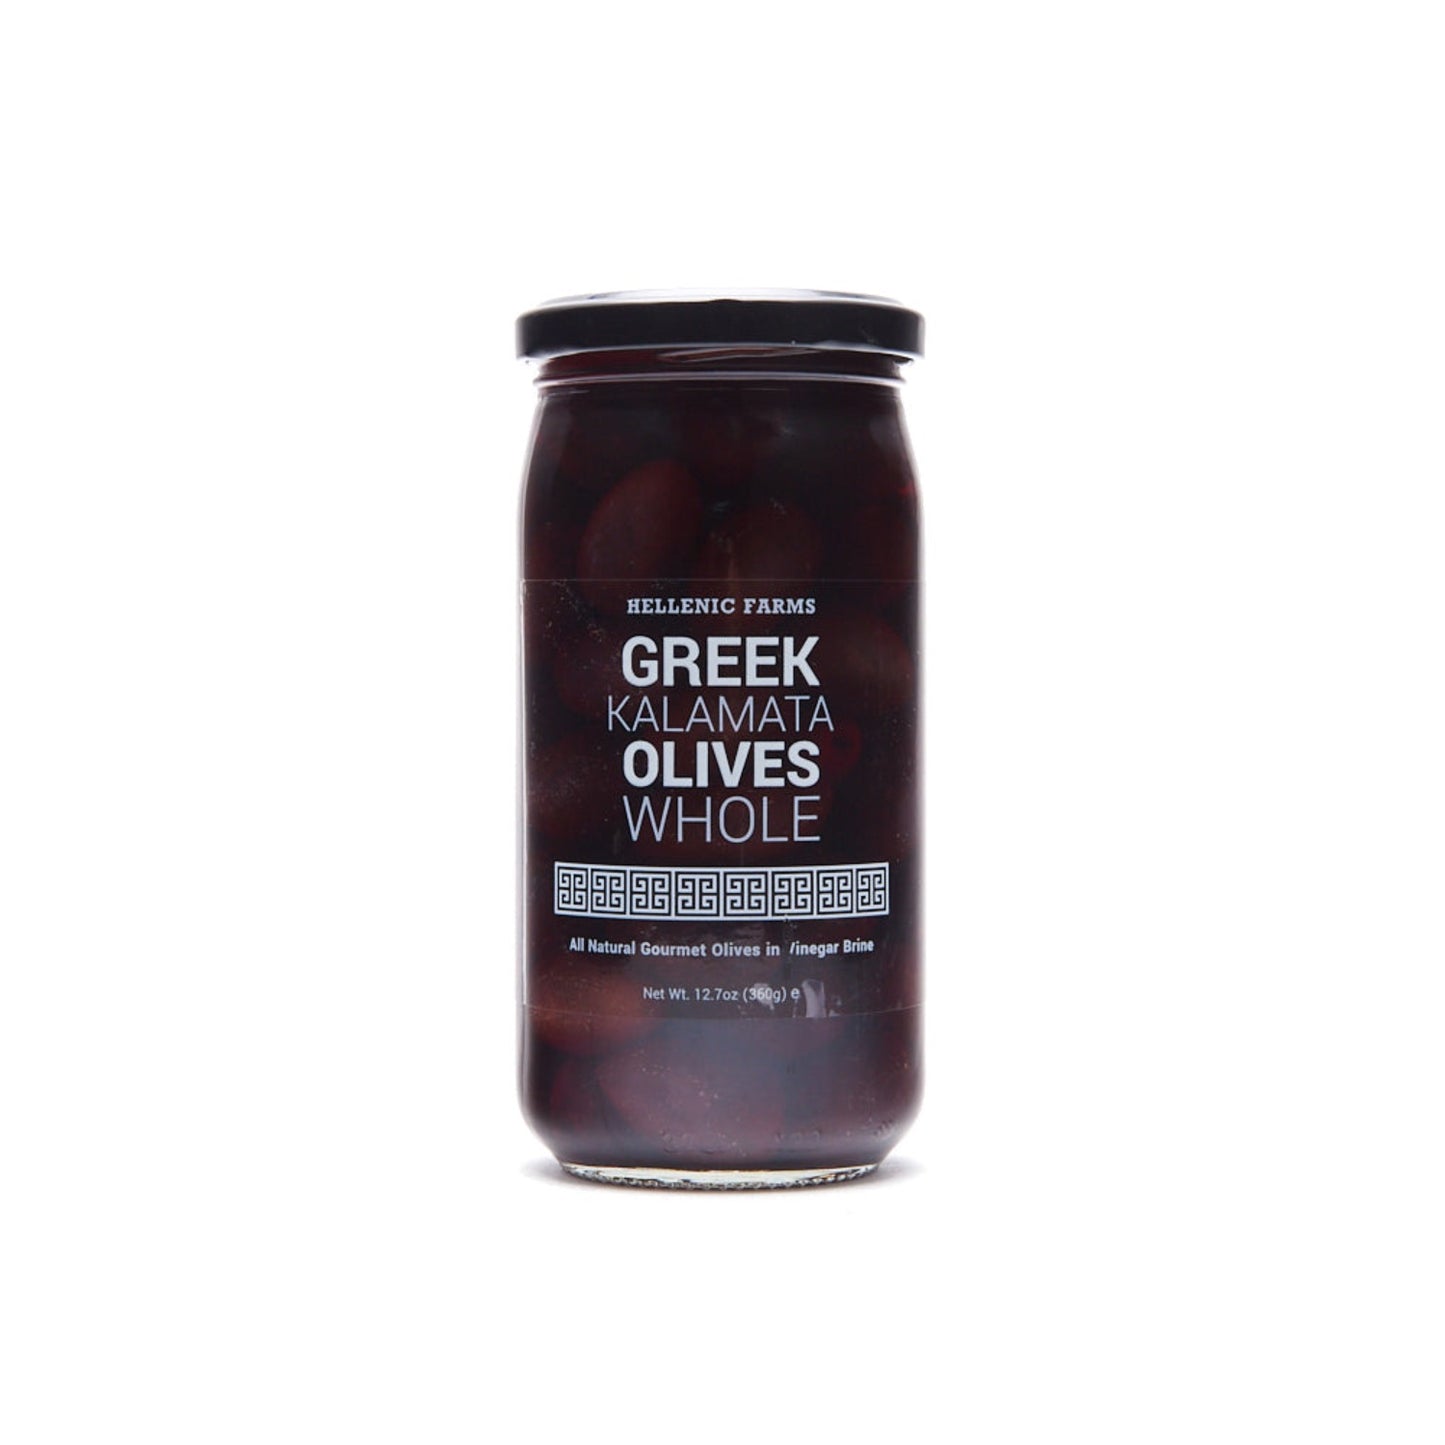 Greek Kalamata Olives Whole